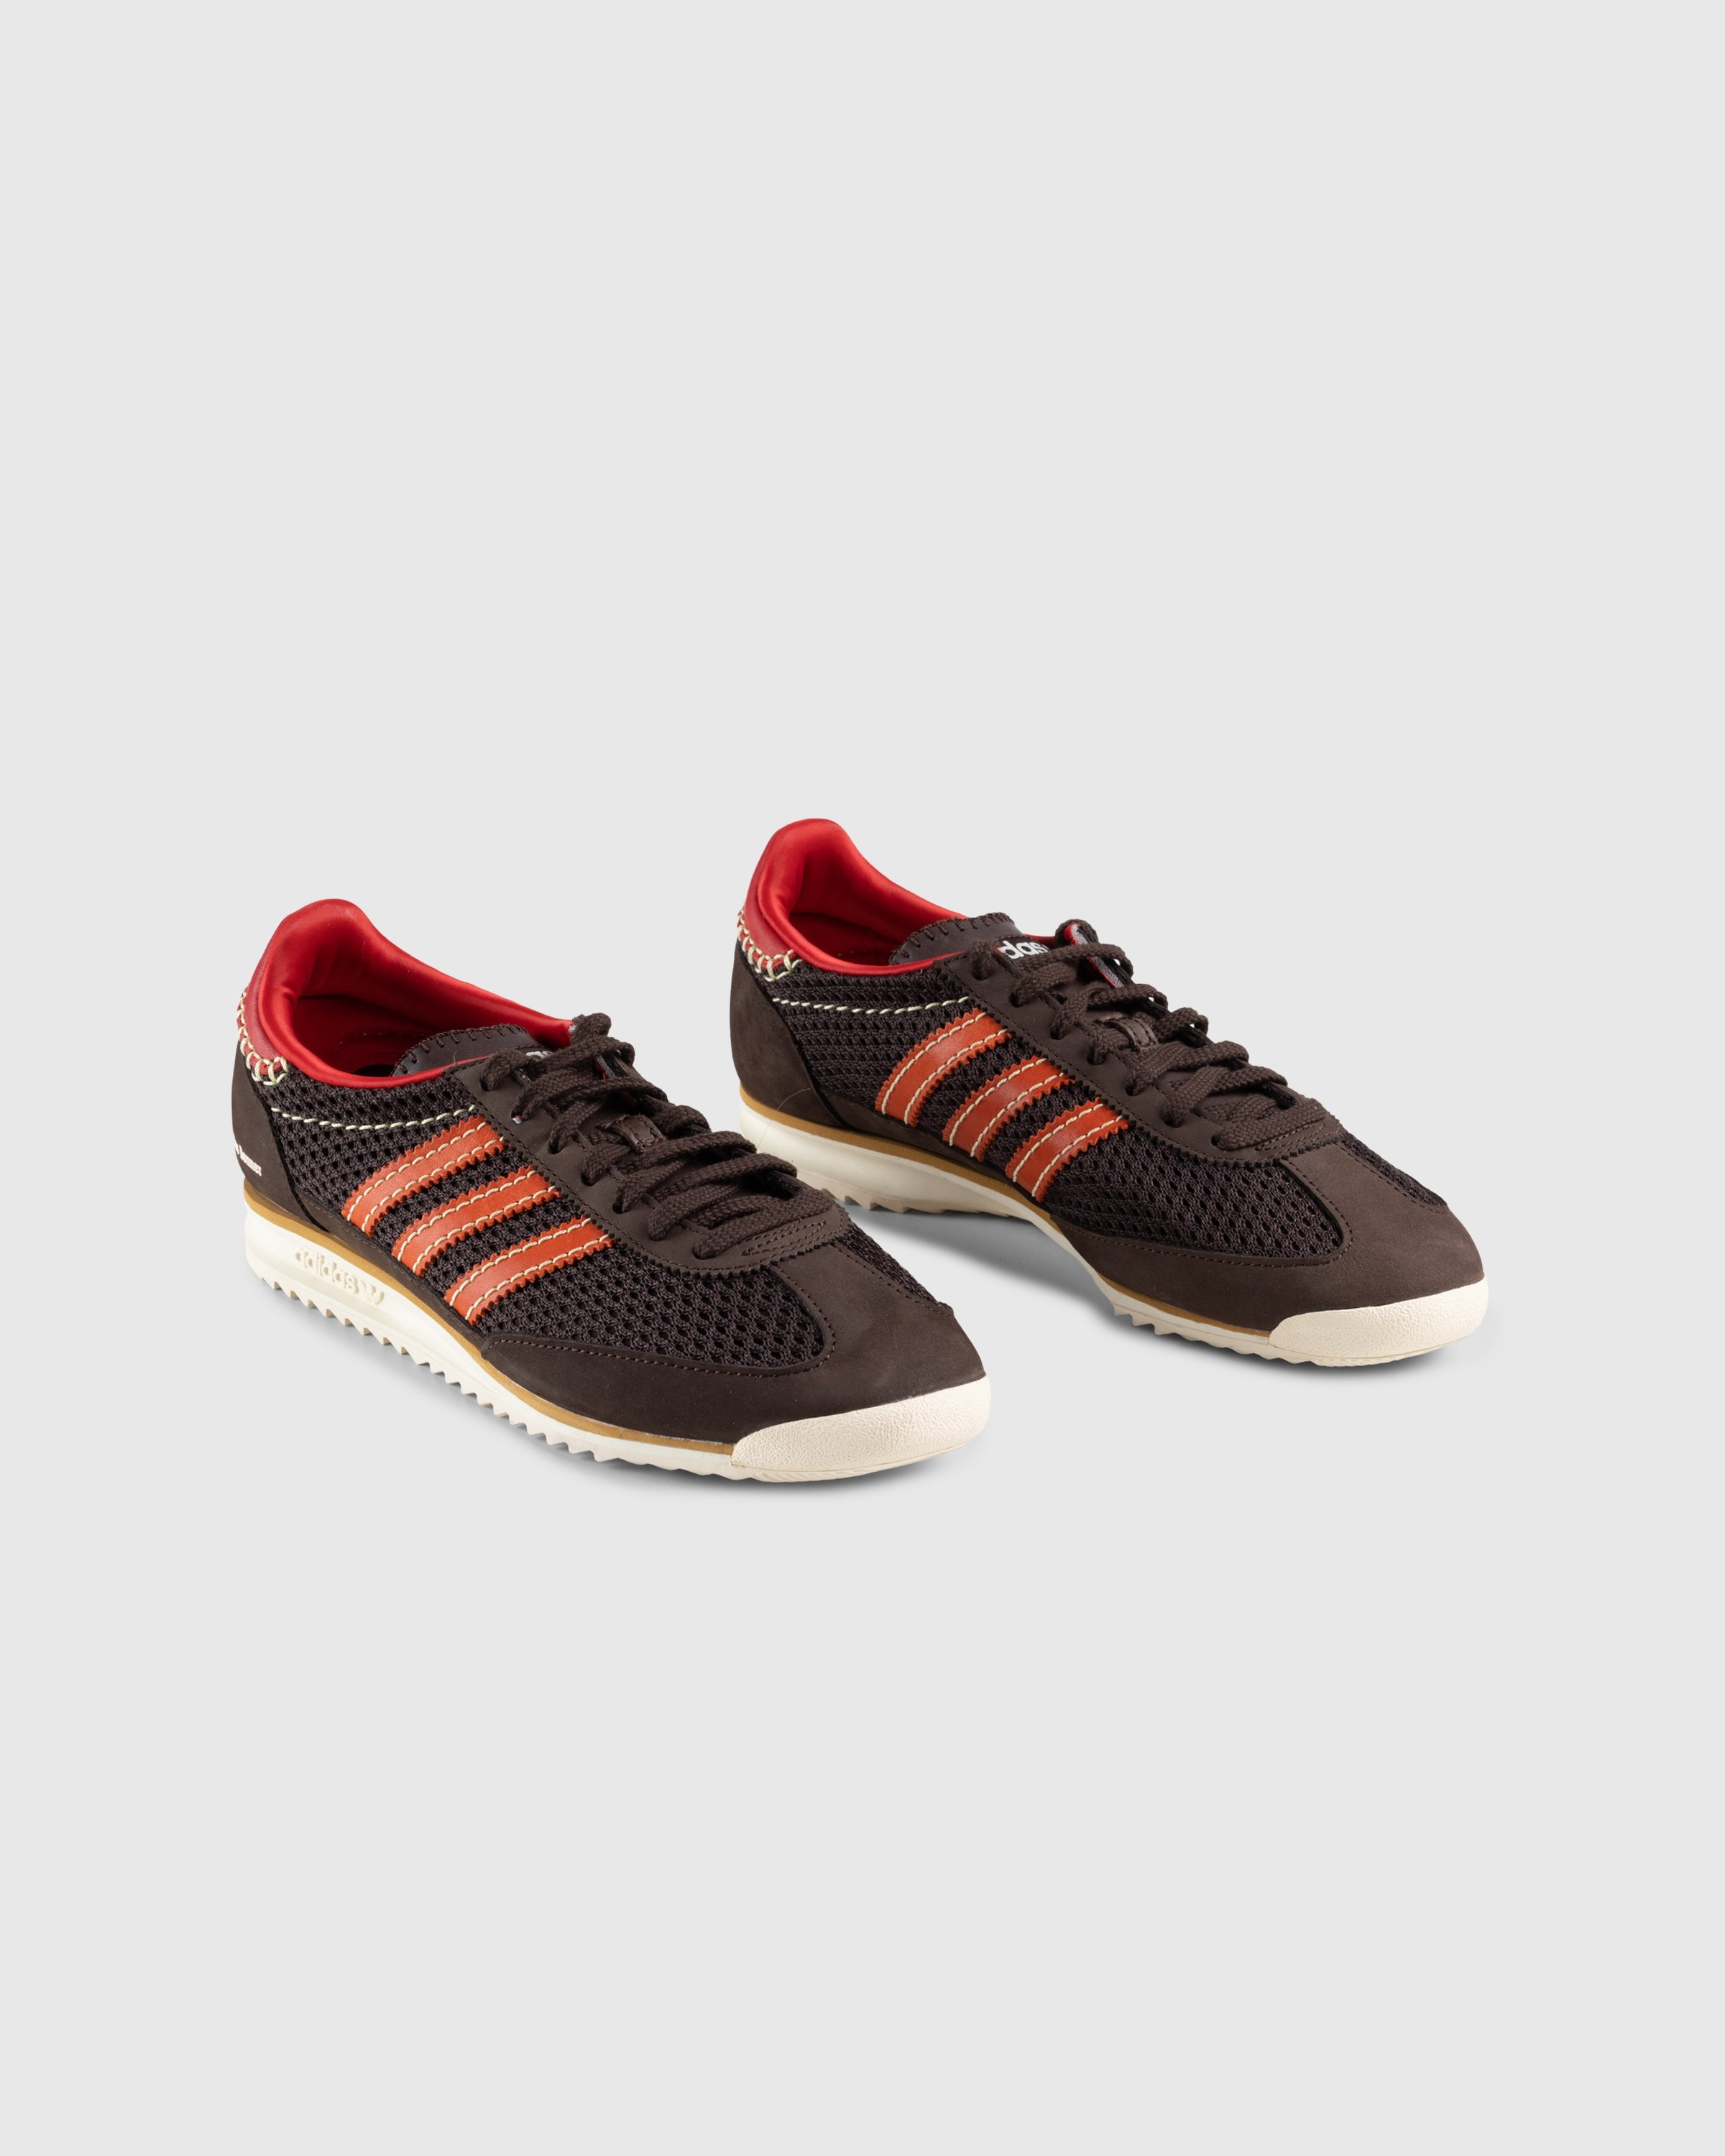 Adidas x Wales Bonner – SL72 Knit Dark Brown - Sneakers - Brown - Image 3